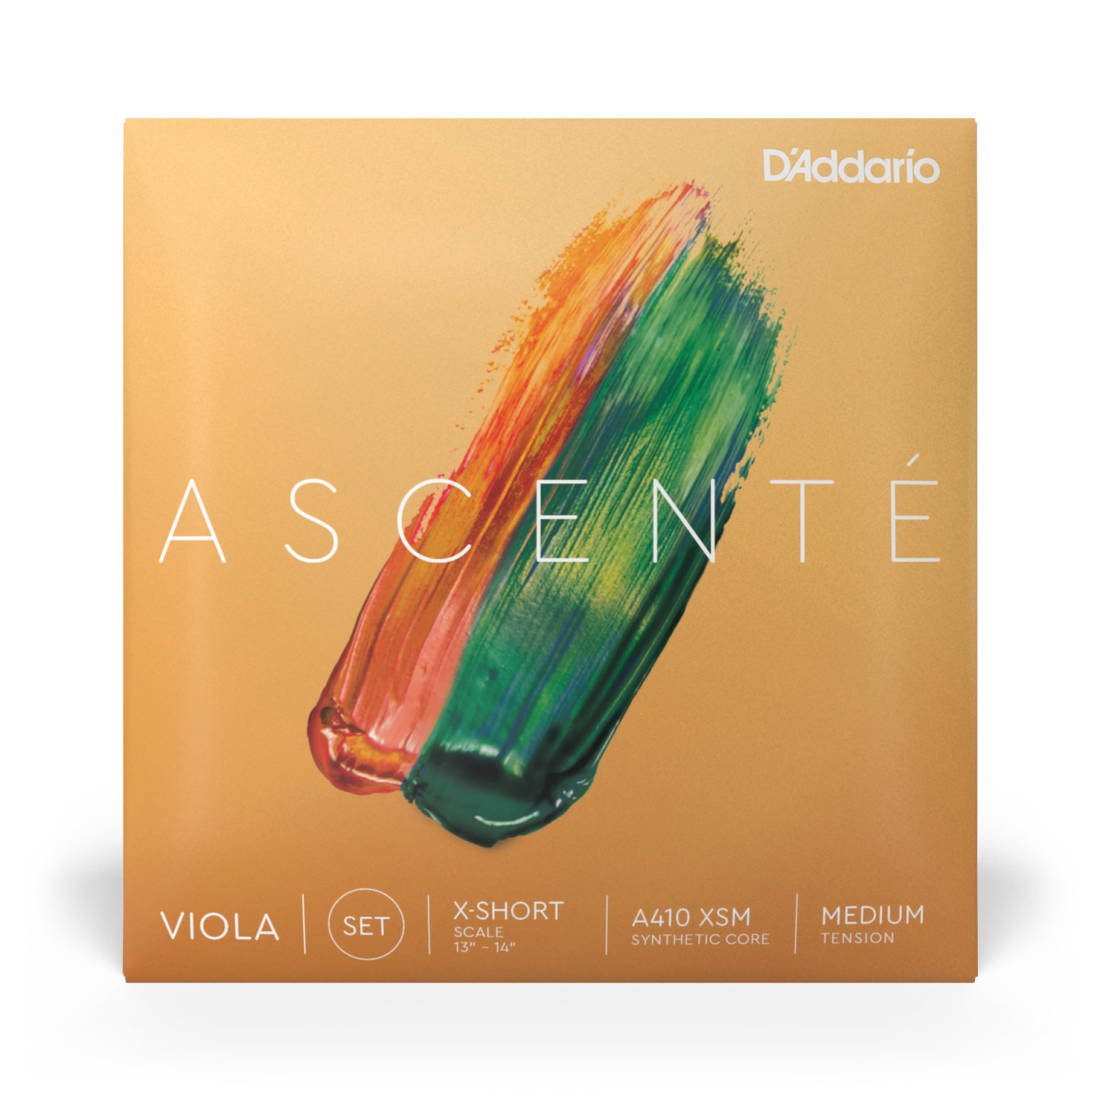 Ascente Viola String Set, Medium Tension - Extra Short